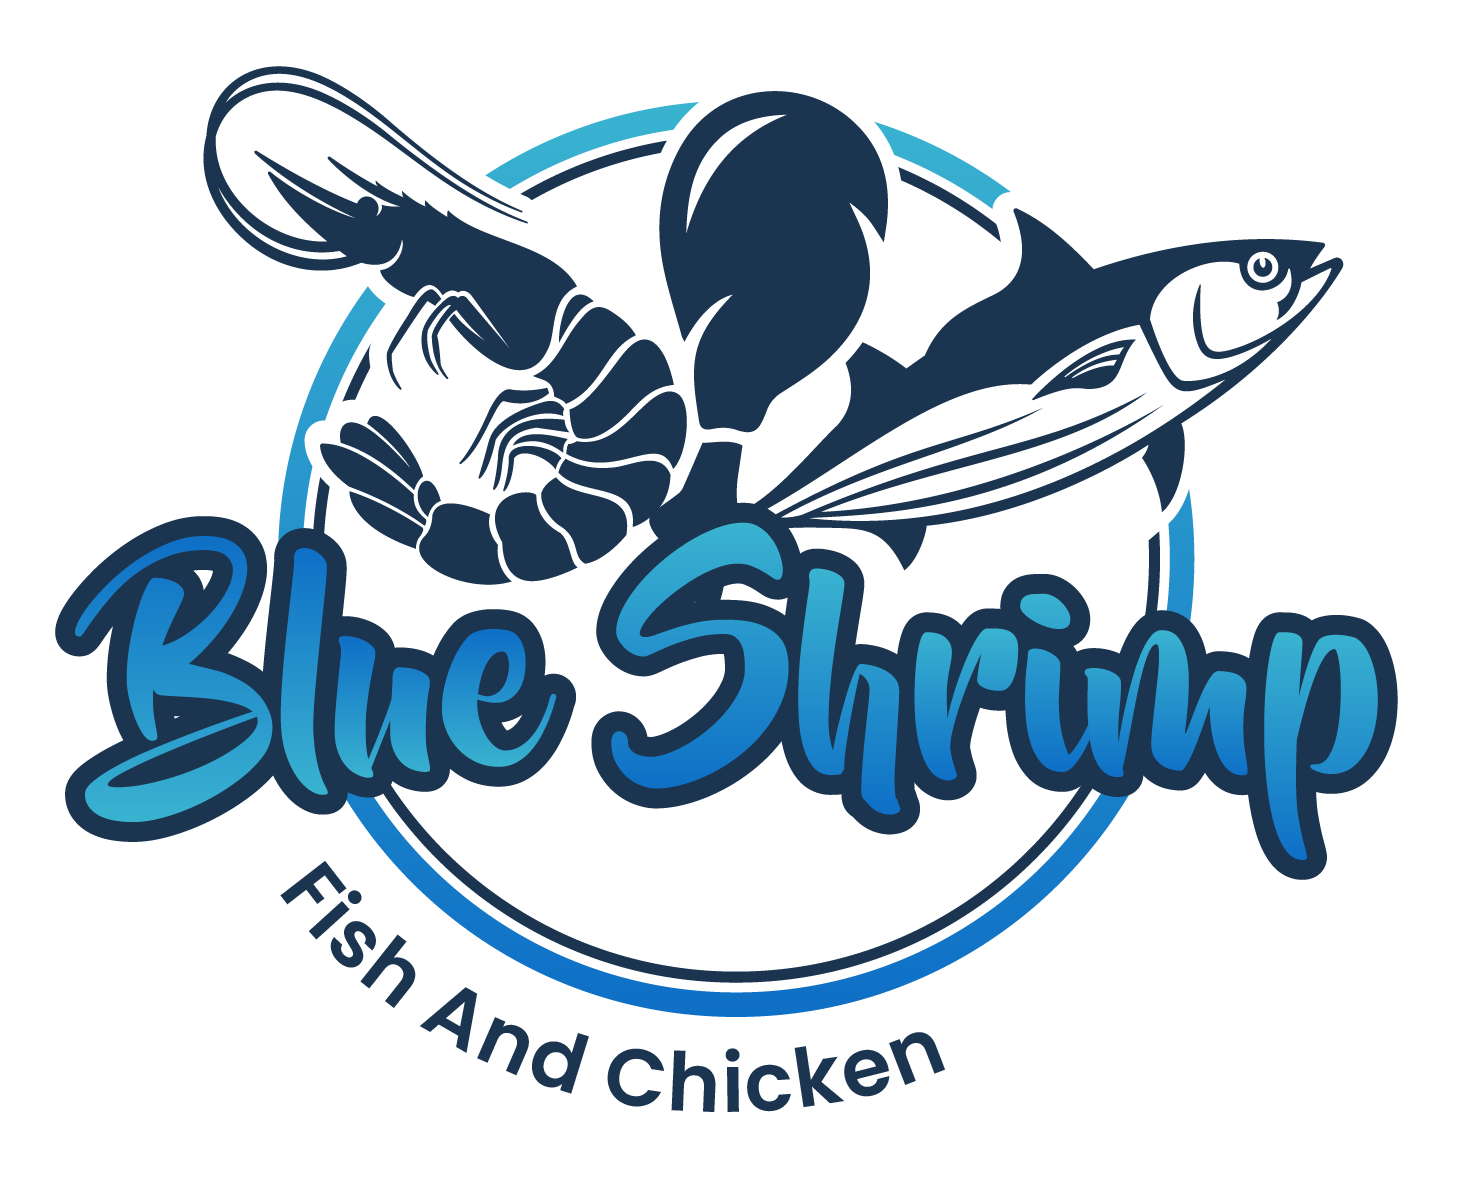 Blue shrimp fish & chicken